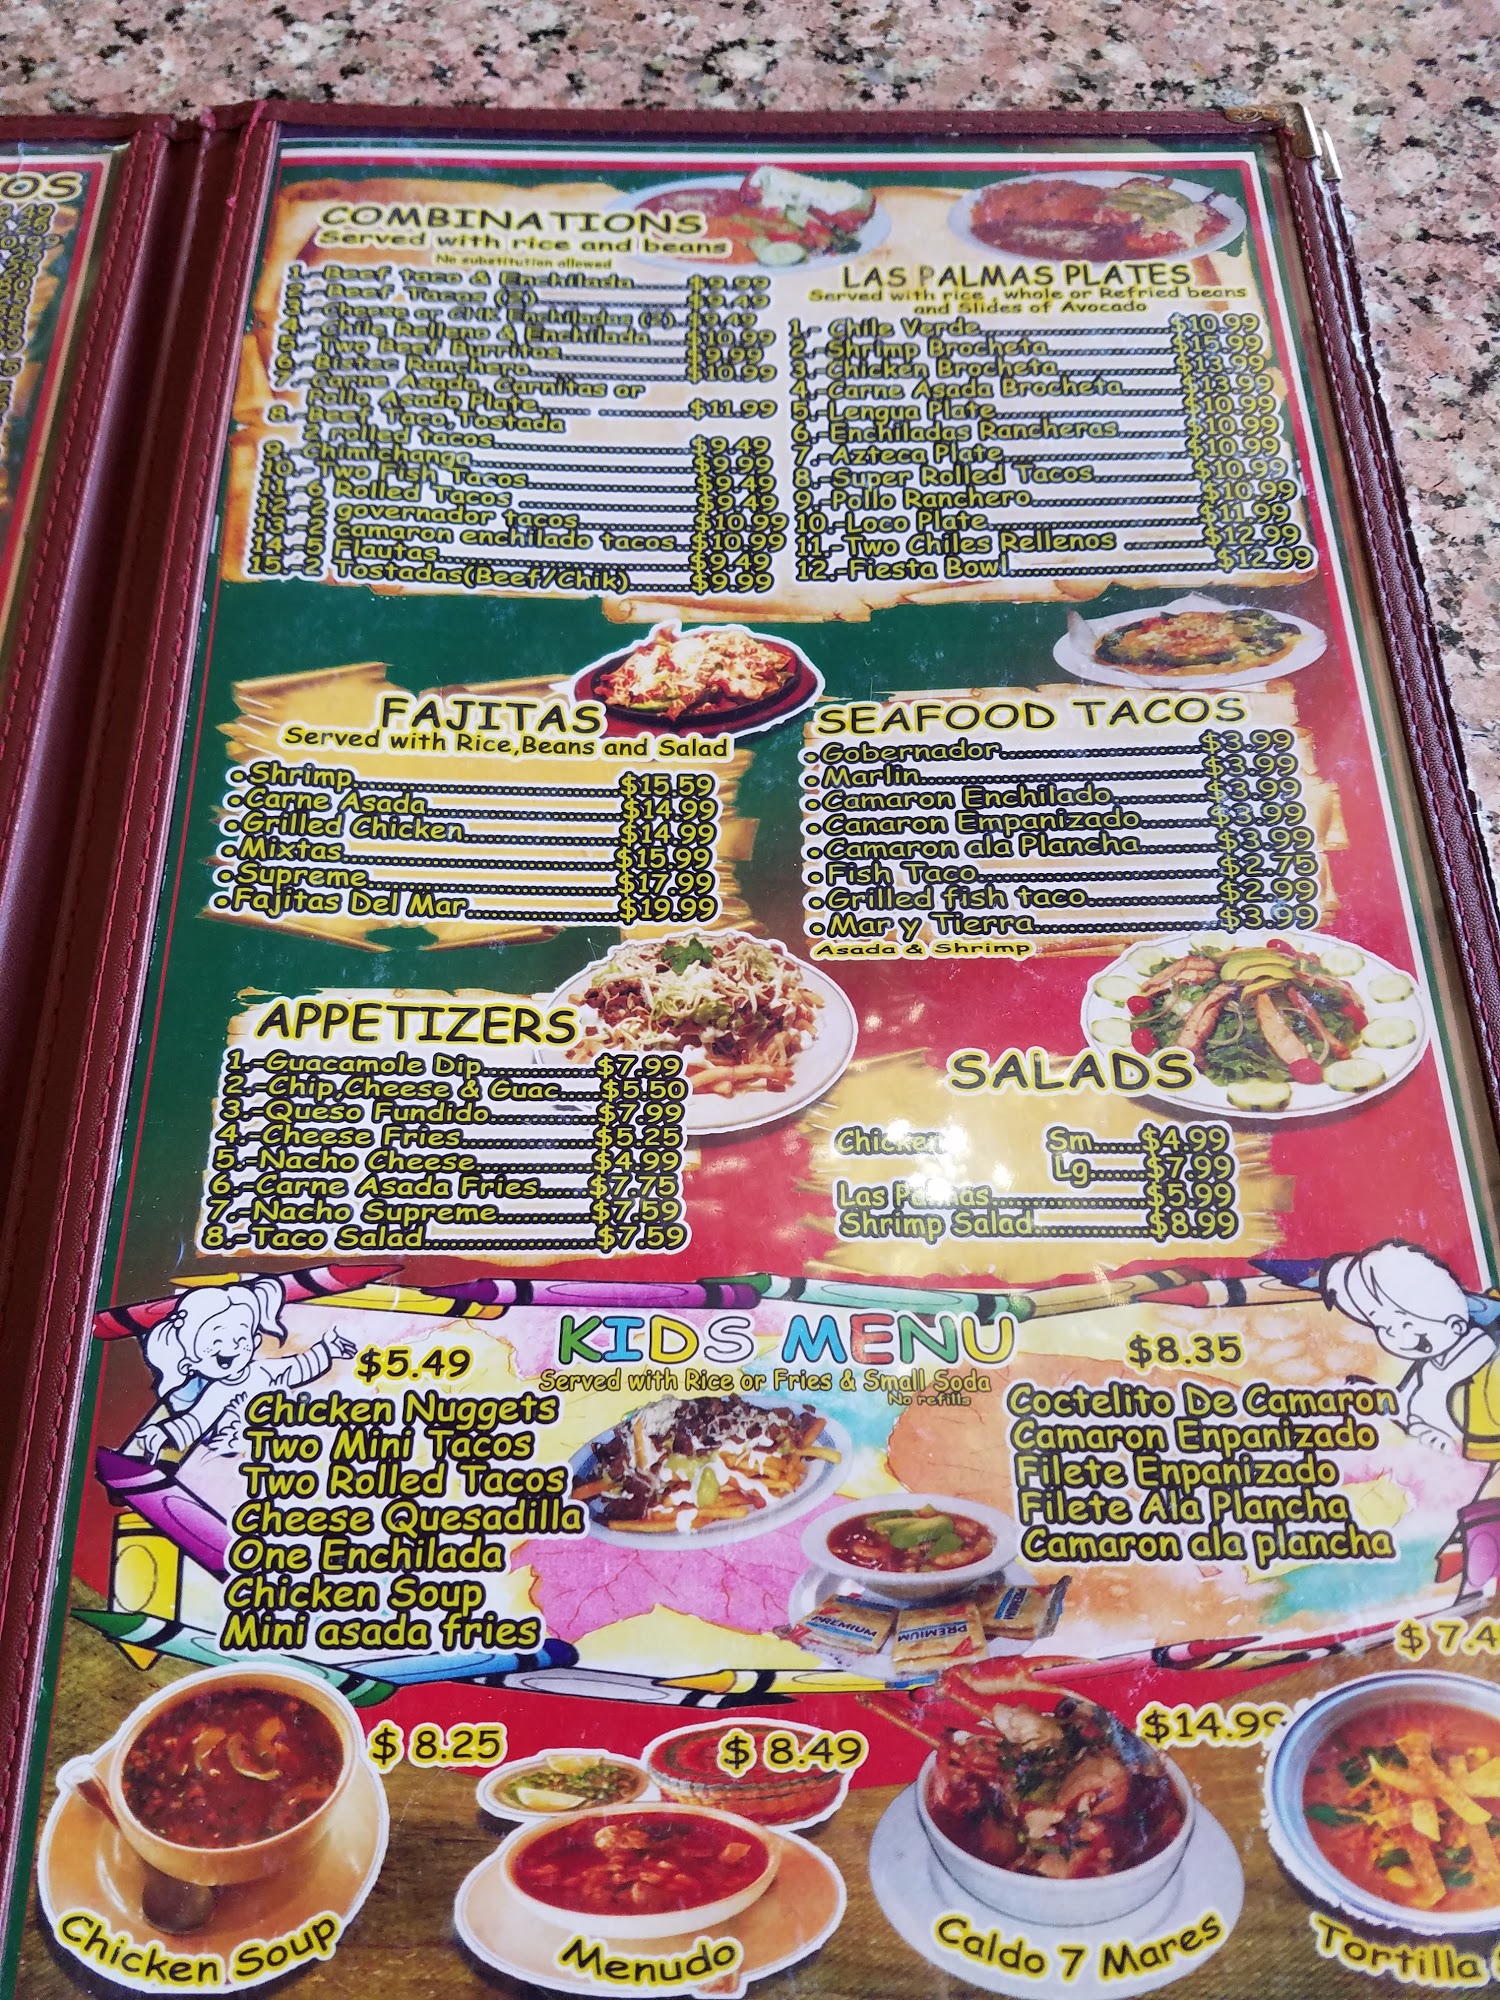 Rancho Las Palmas Mexican Grill & Seafood Menu Escondido CA 92025